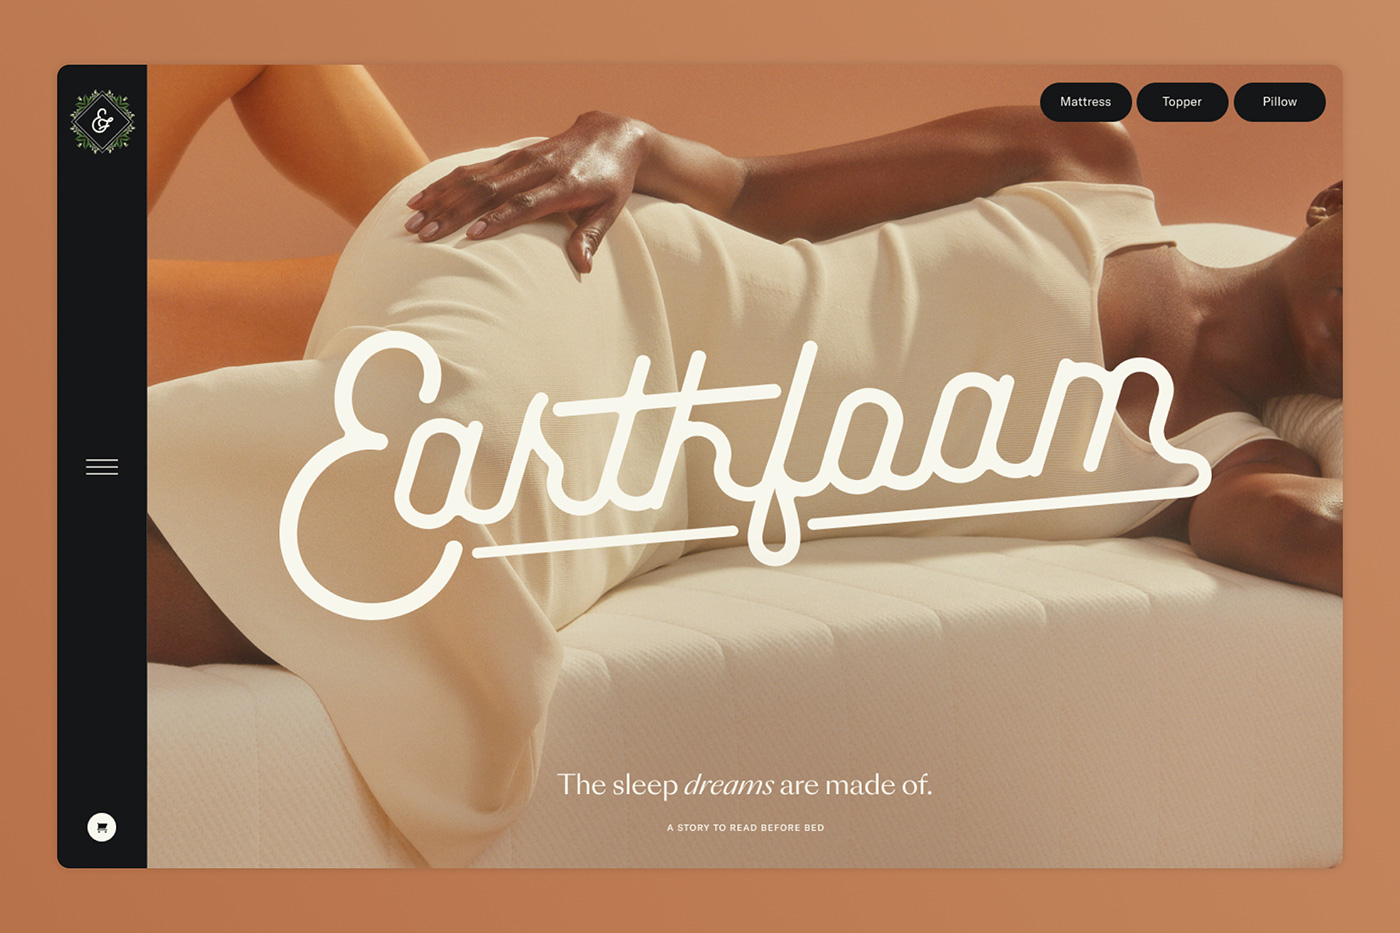 睡眠品牌Earthfoam视觉识别设计